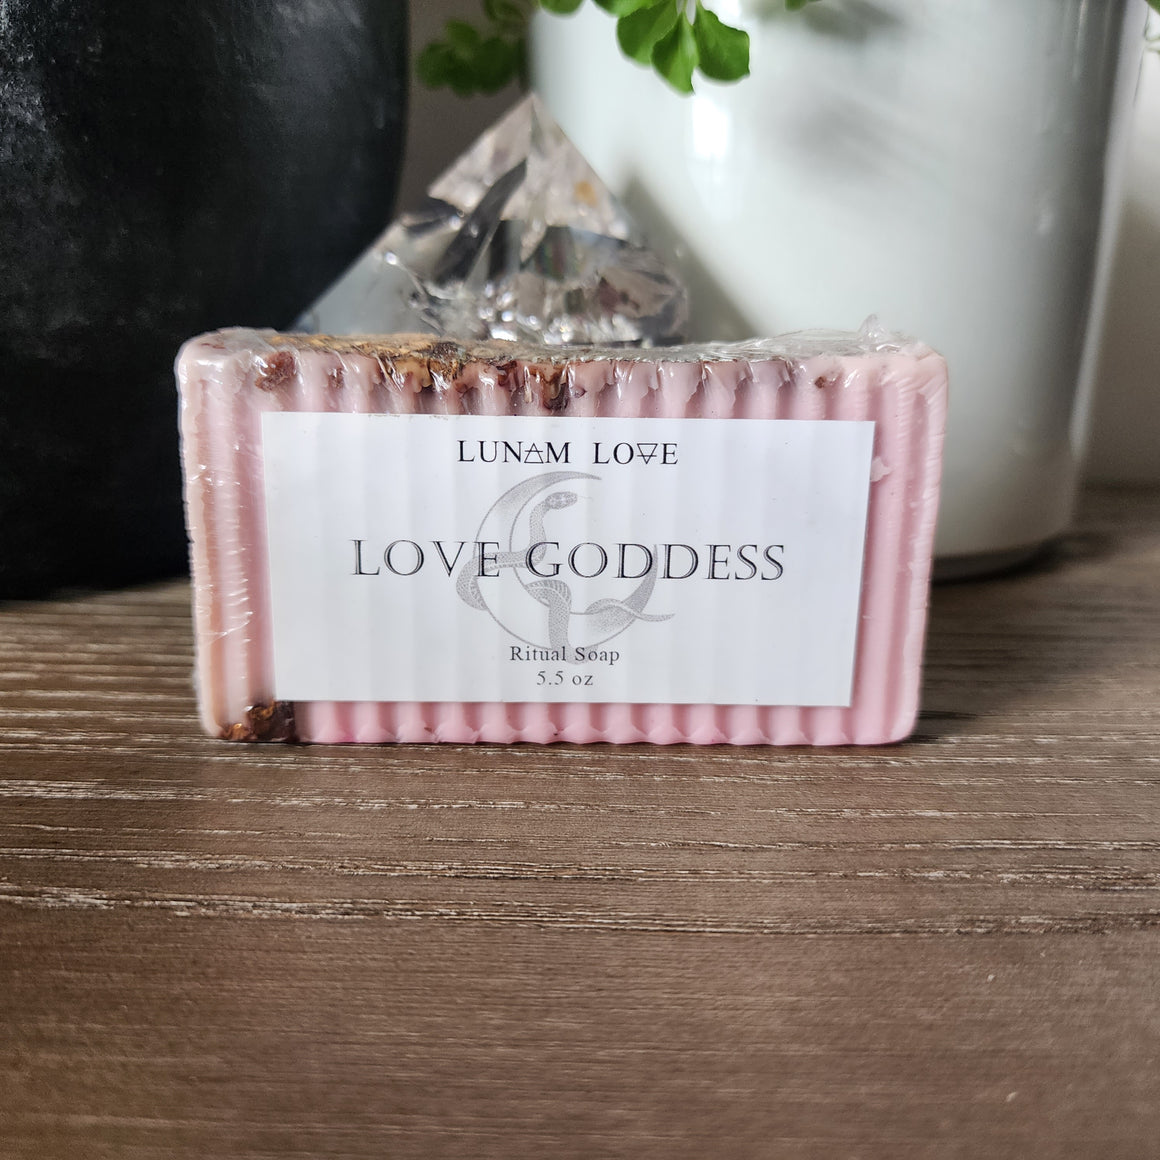 Love Goddess Ritual Soap